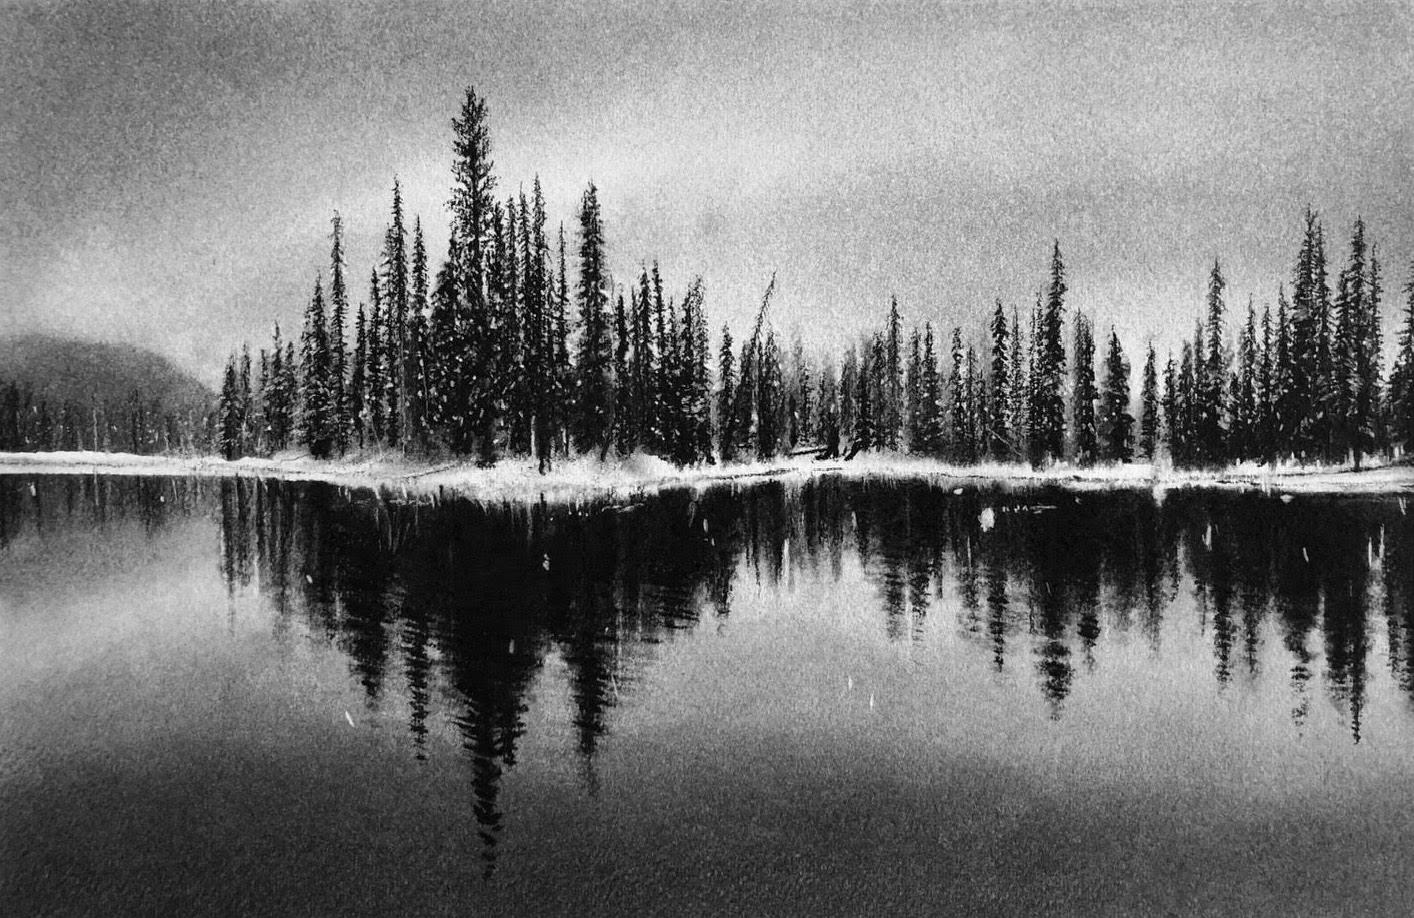 Figurative Art Katherine Curci - Reflections d'hiver, dessin au fusain noir et blanc d'arbres et de lac